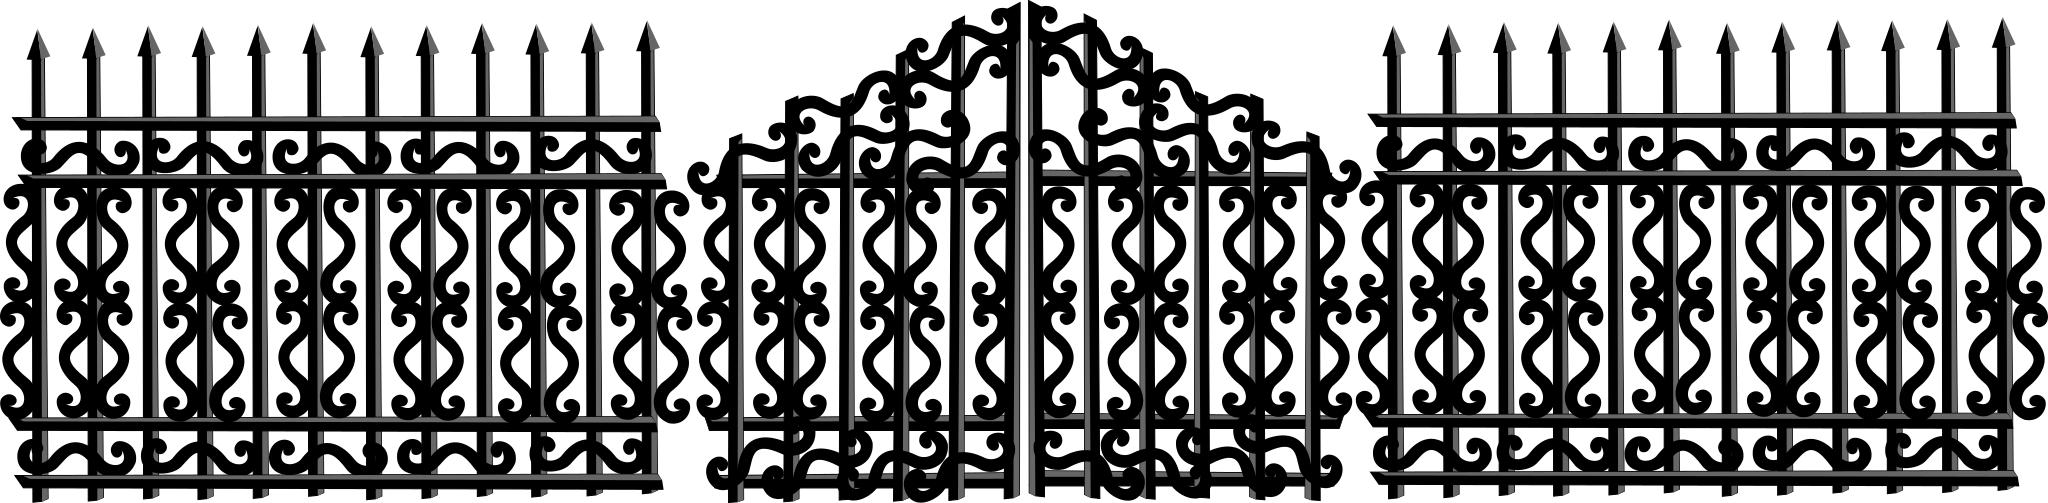 Забор металлический вектор